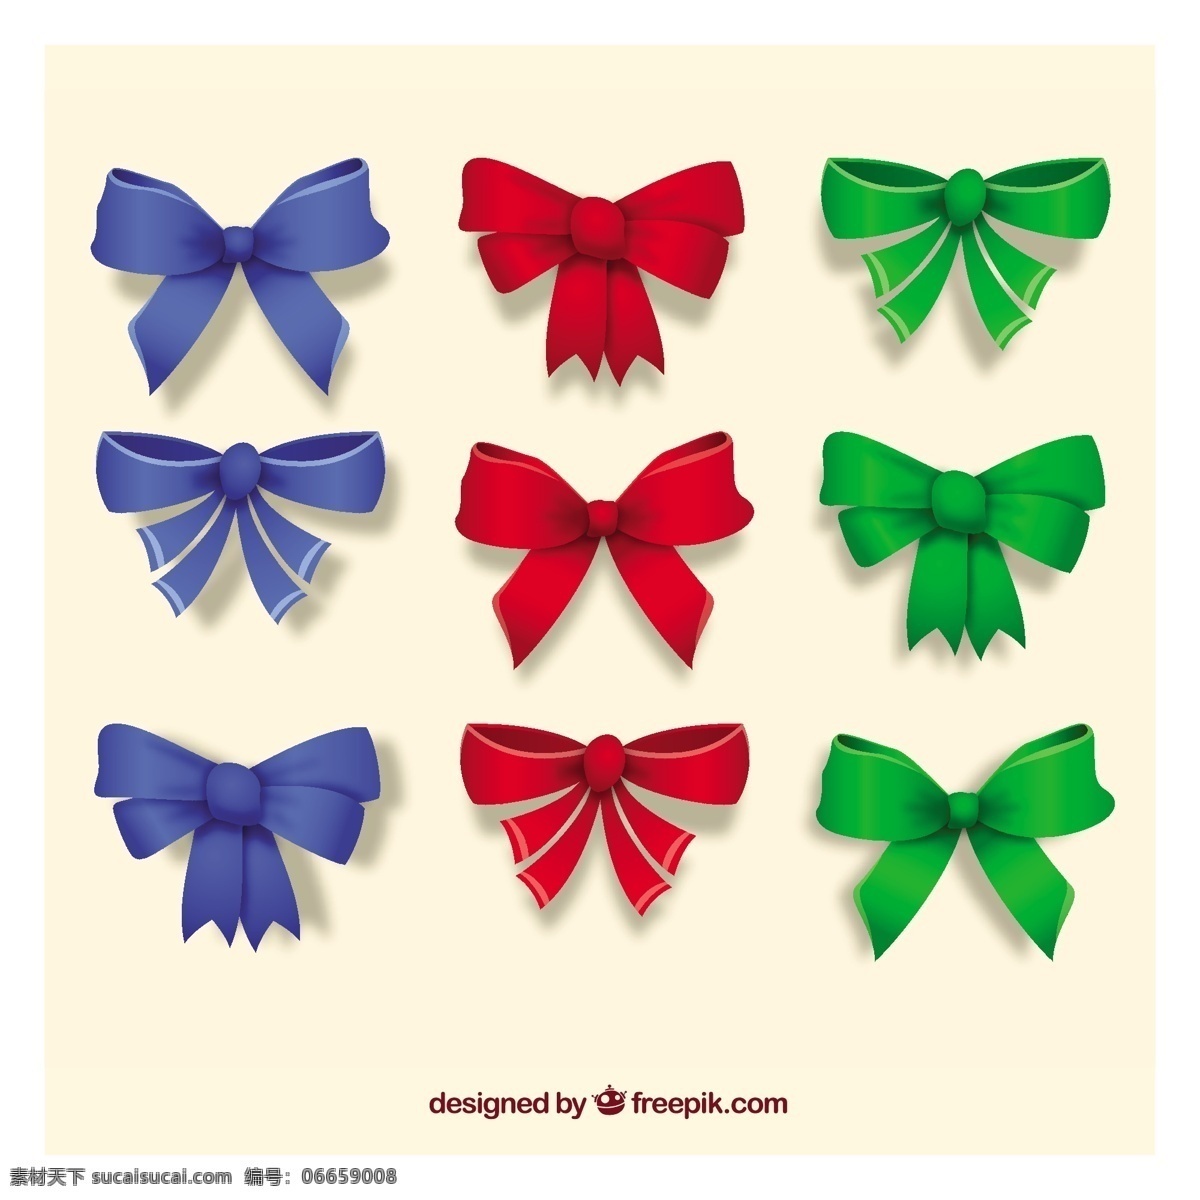 彩色织带饰品 织带 饰品 礼品 绿色 蓝色 红色 蝴蝶结 装饰 丝带 惊喜 纺织 色彩缤纷 彩带 色彩 收藏